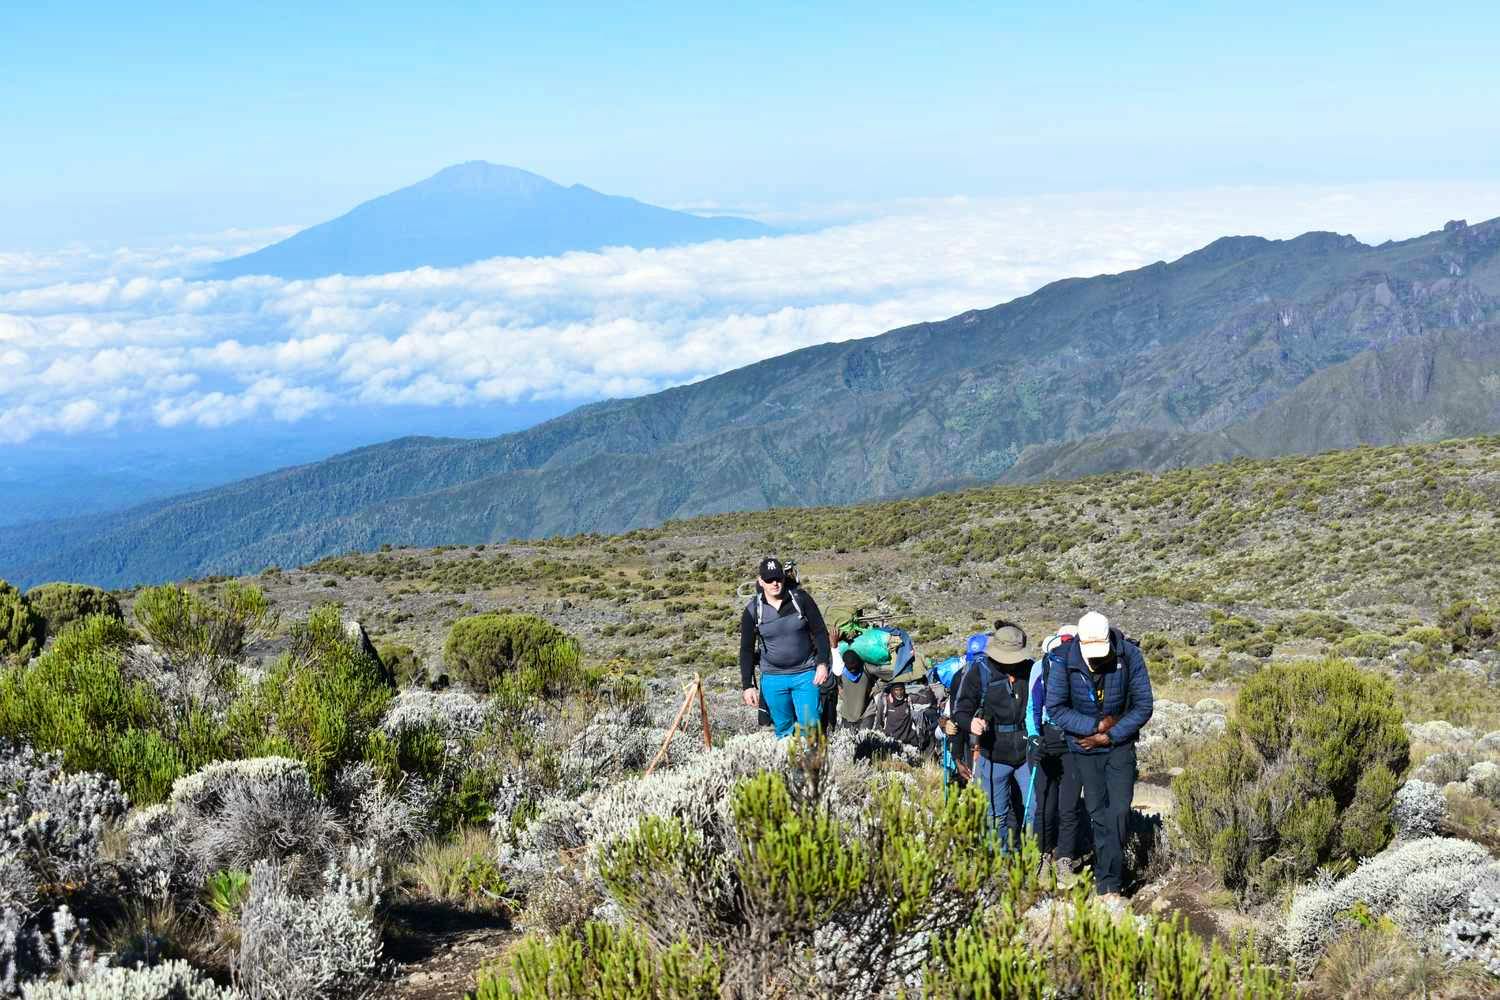 Kilimanjaro hike Mt. Meru in background